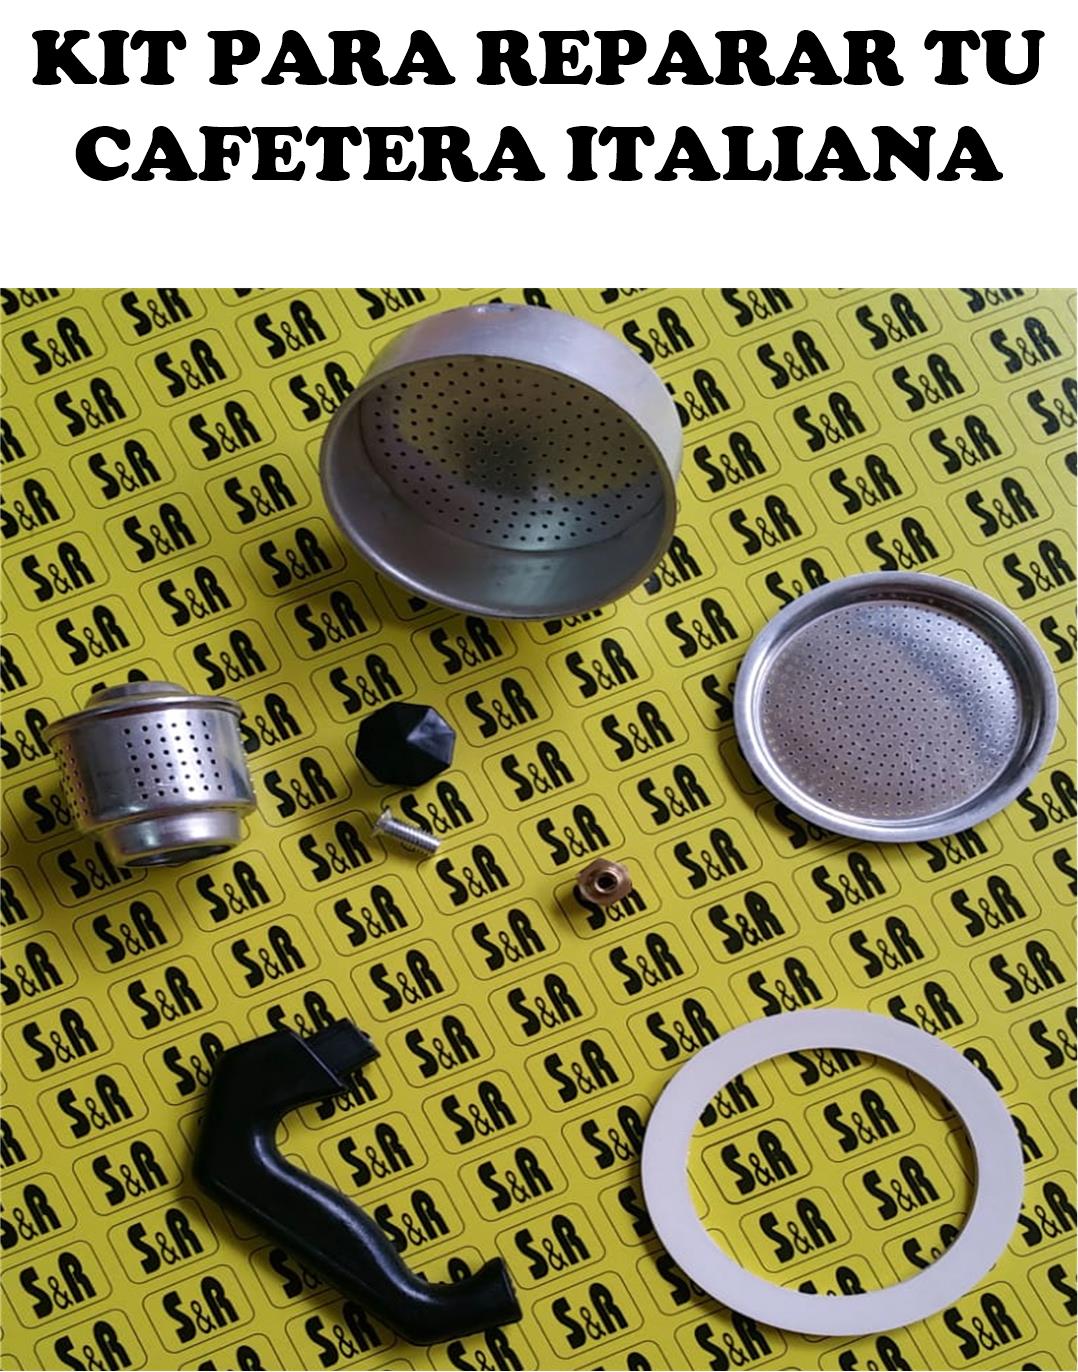 Kit de Cafeteras